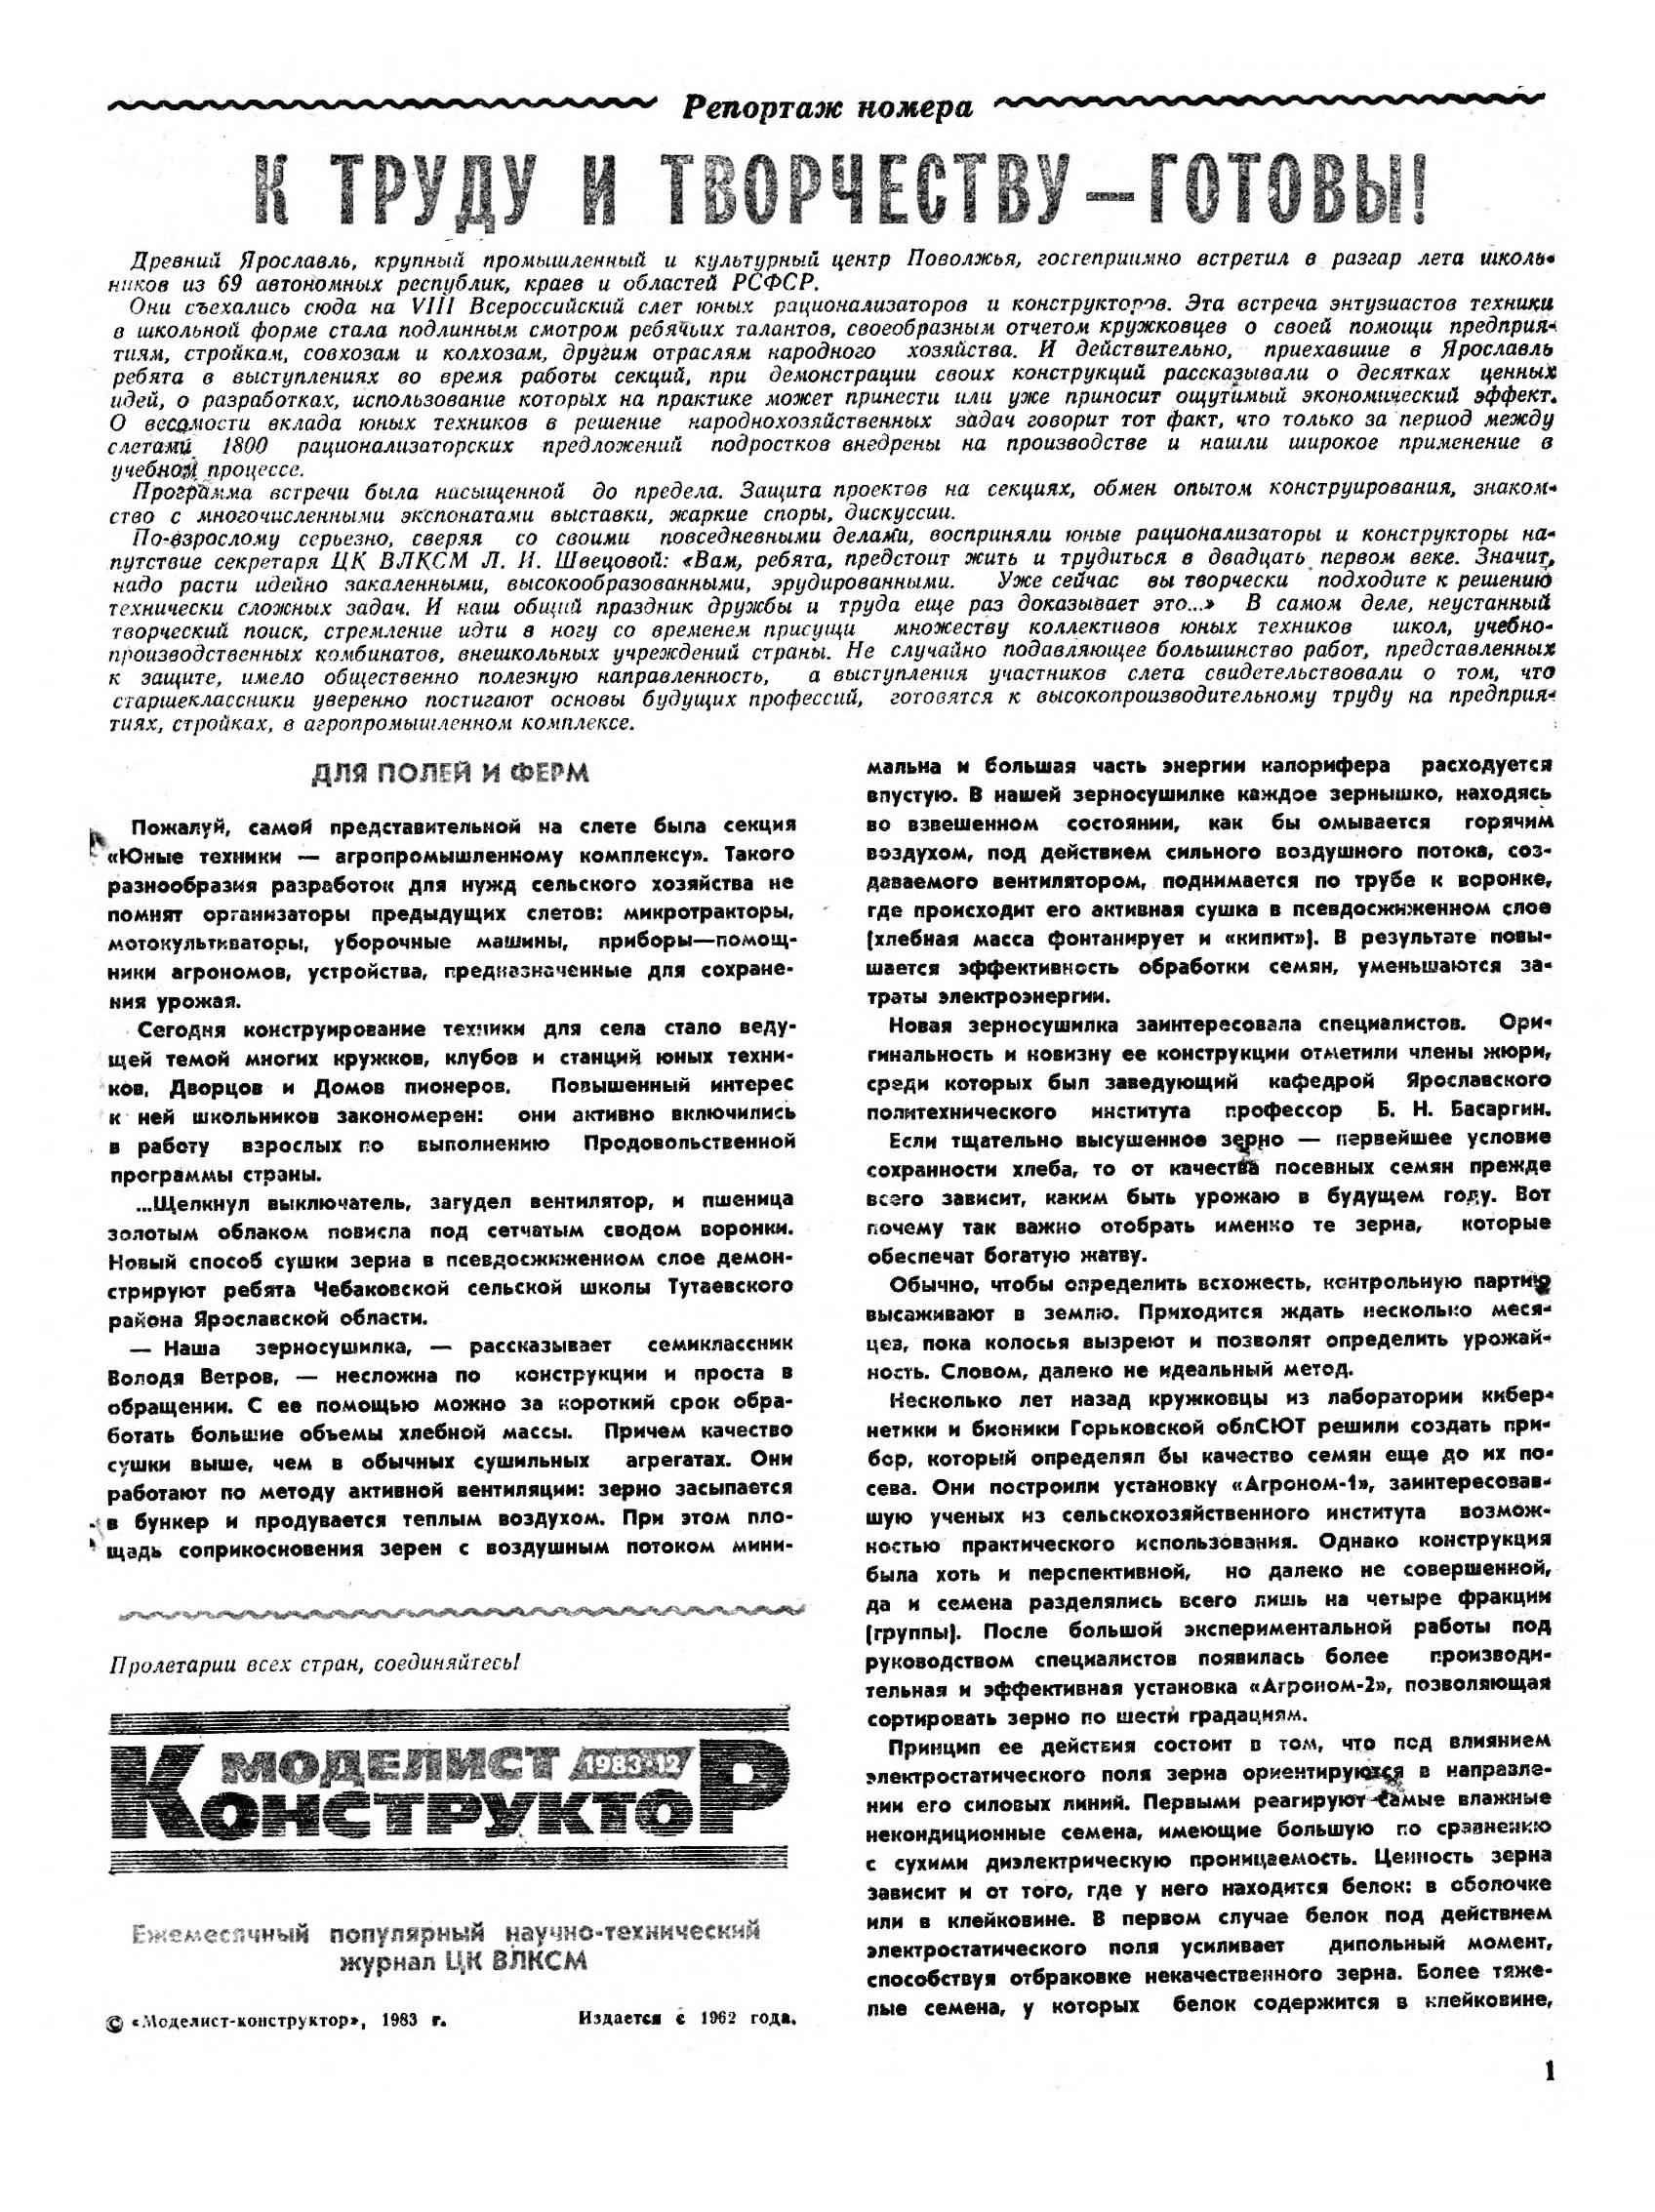 МК 12, 1983, 1 c.